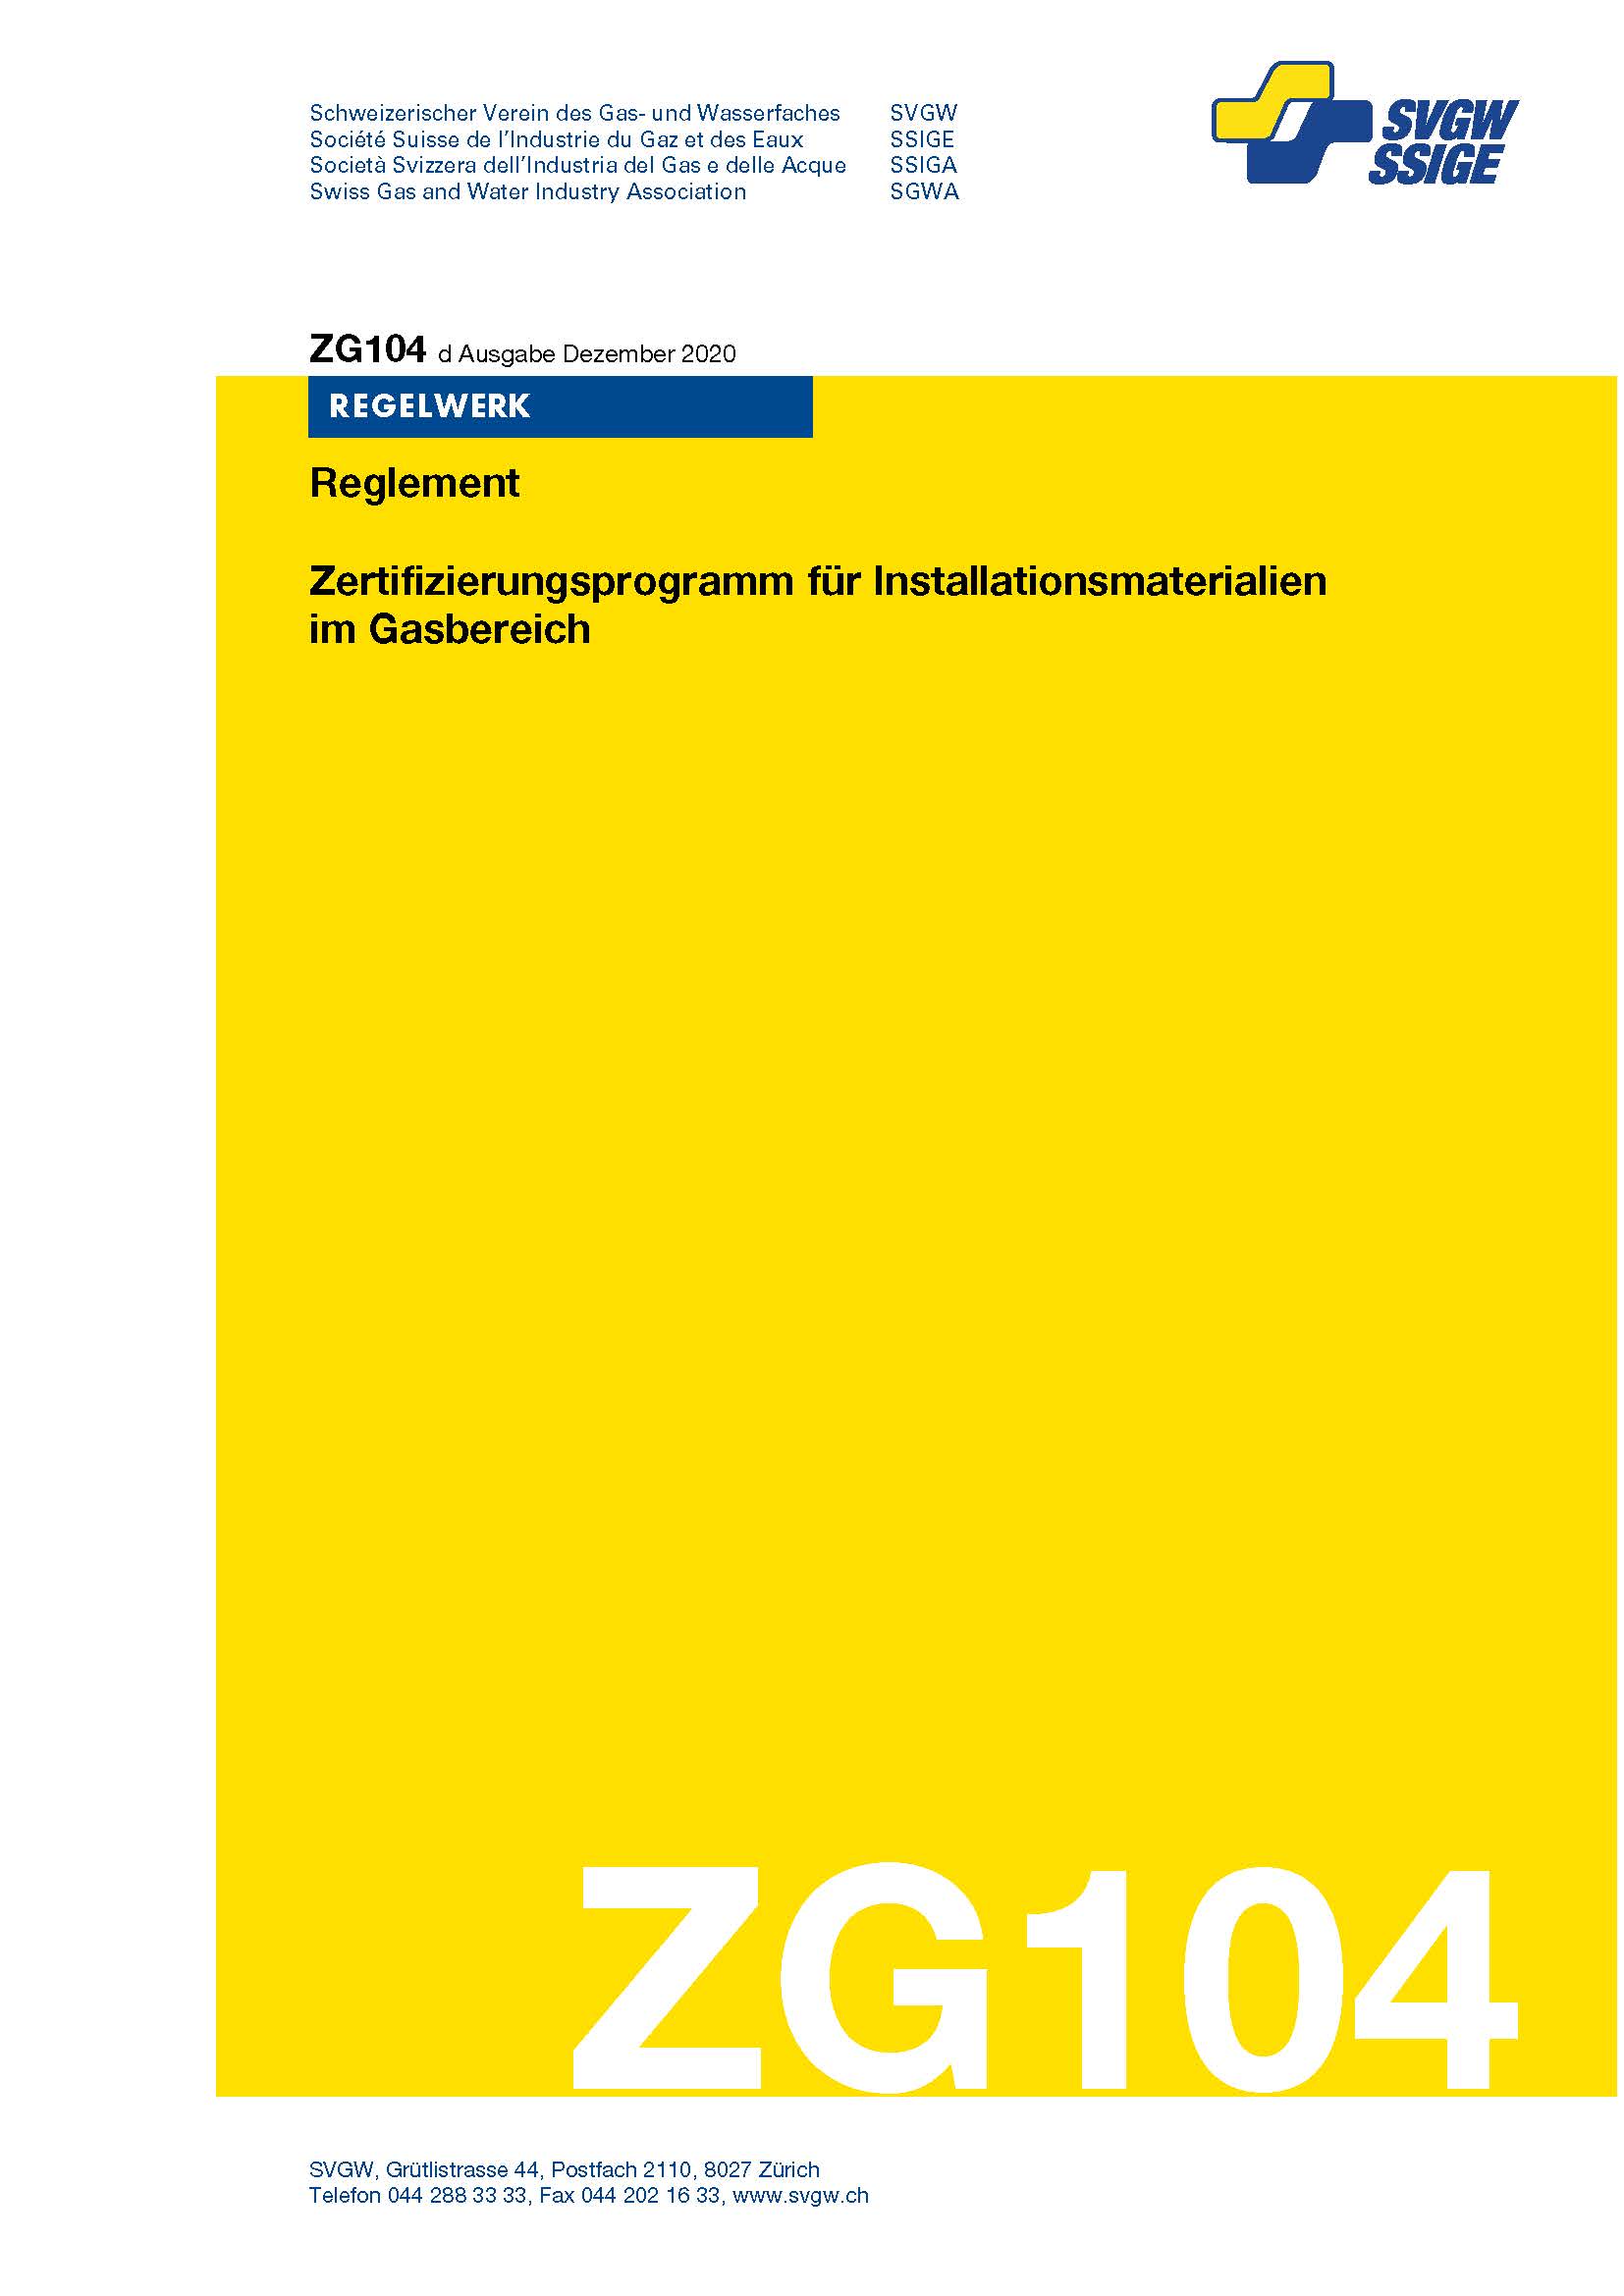 ZG104 d - Reglement; Zertifizierungsprogramm für Installationsmaterialien im Gasbereich